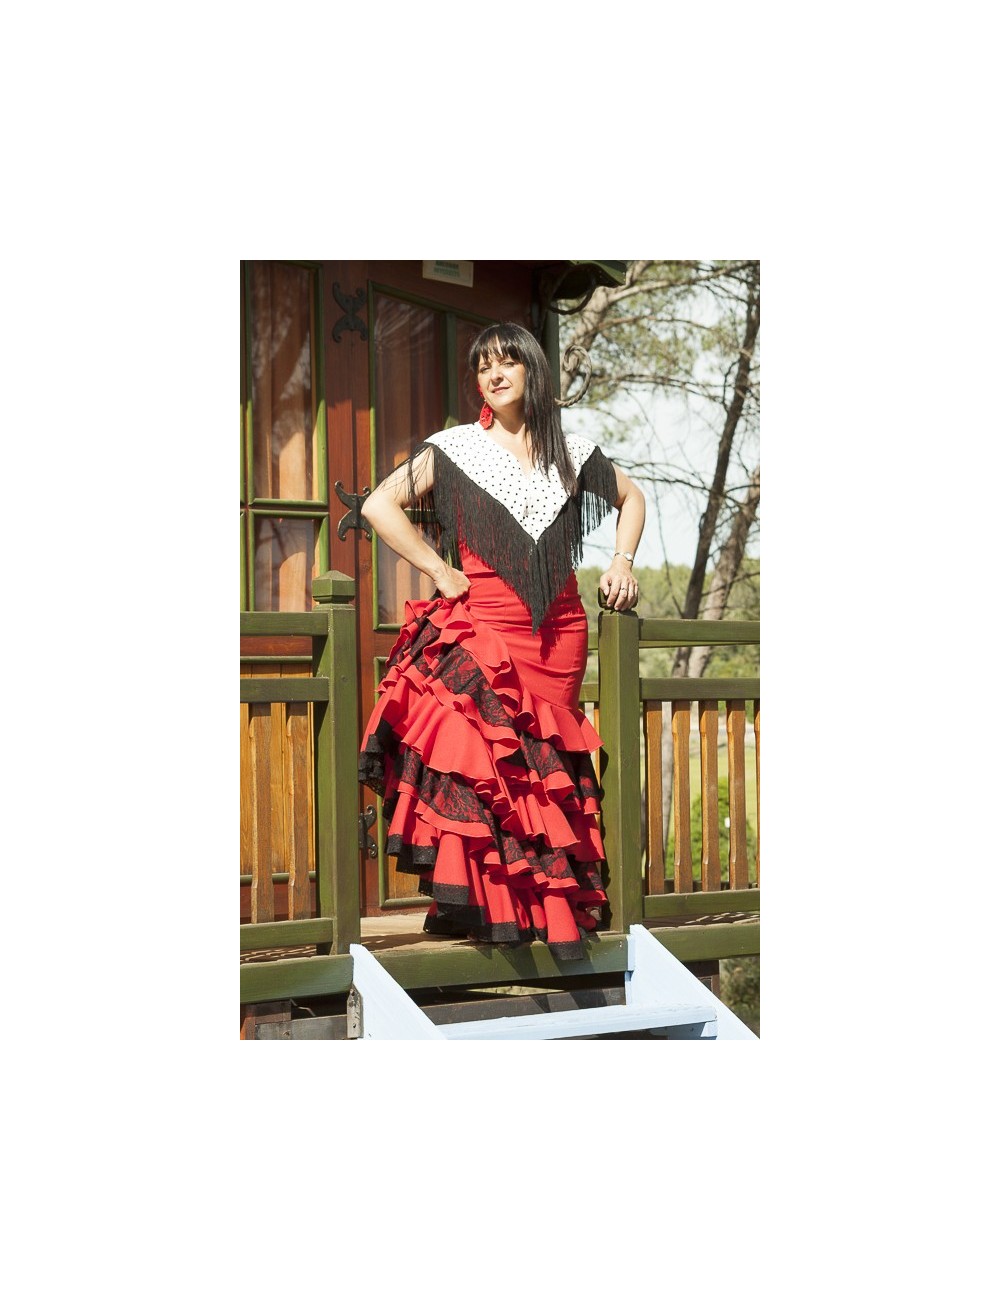 Hauts Flamenca Carmen